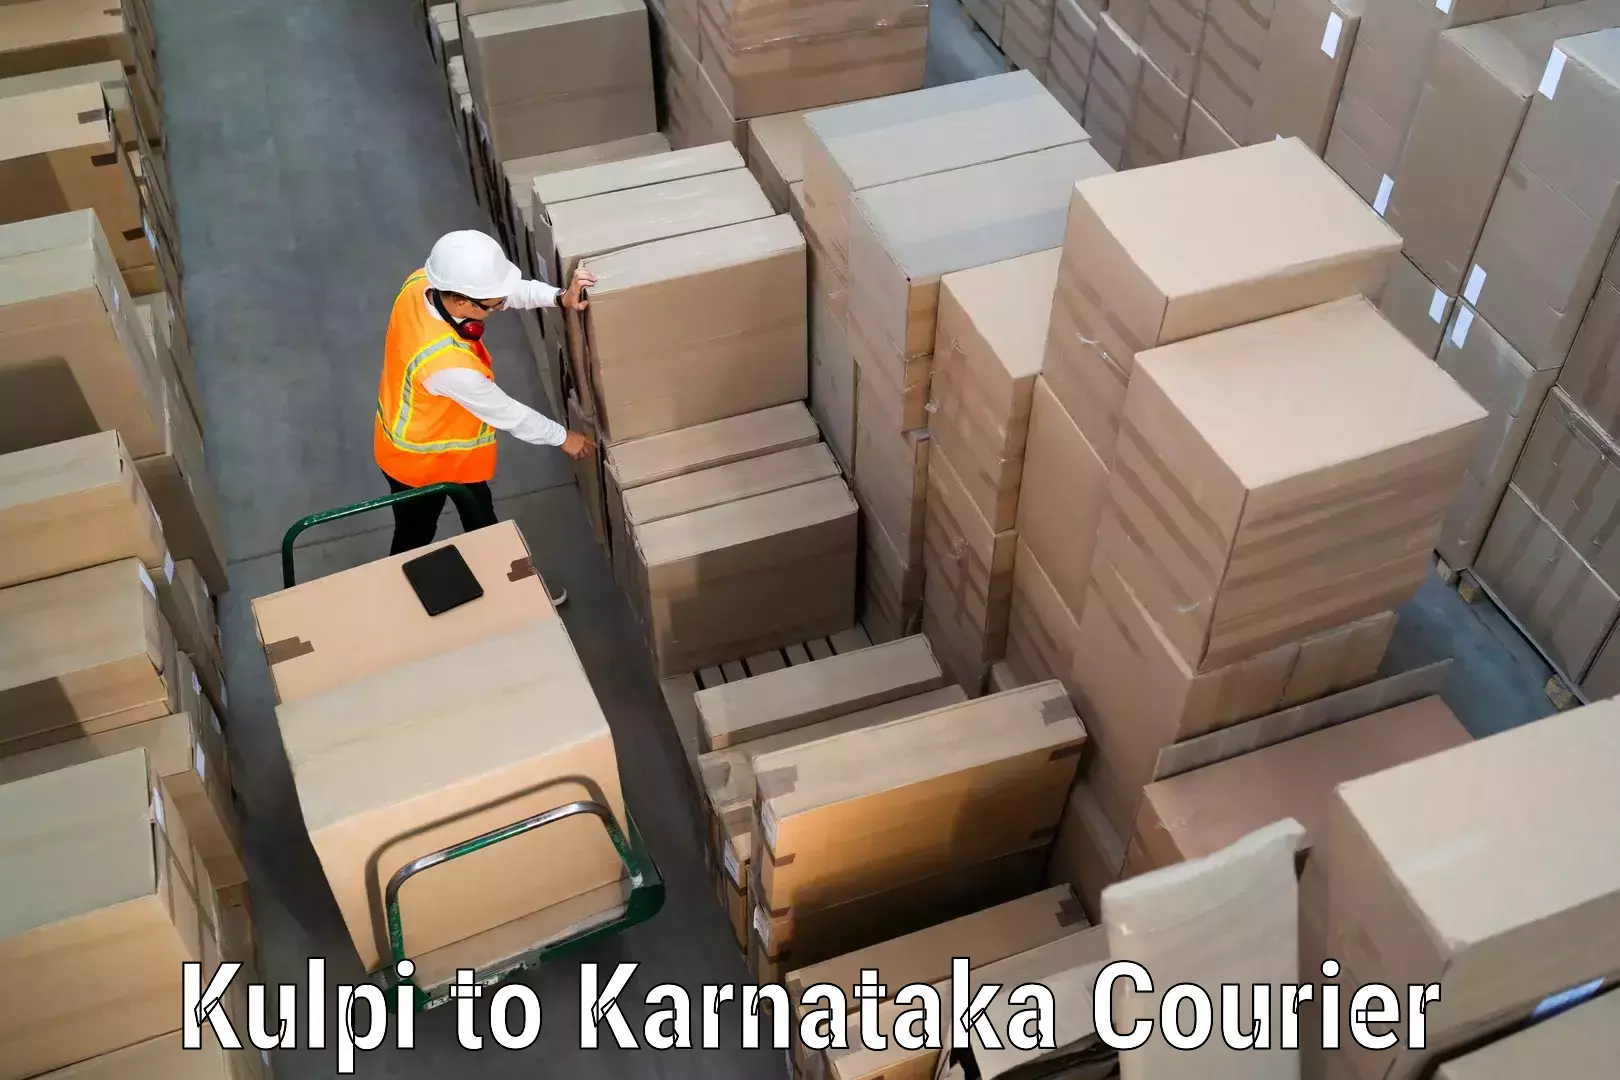 High-capacity shipping options in Kulpi to Kanakapura